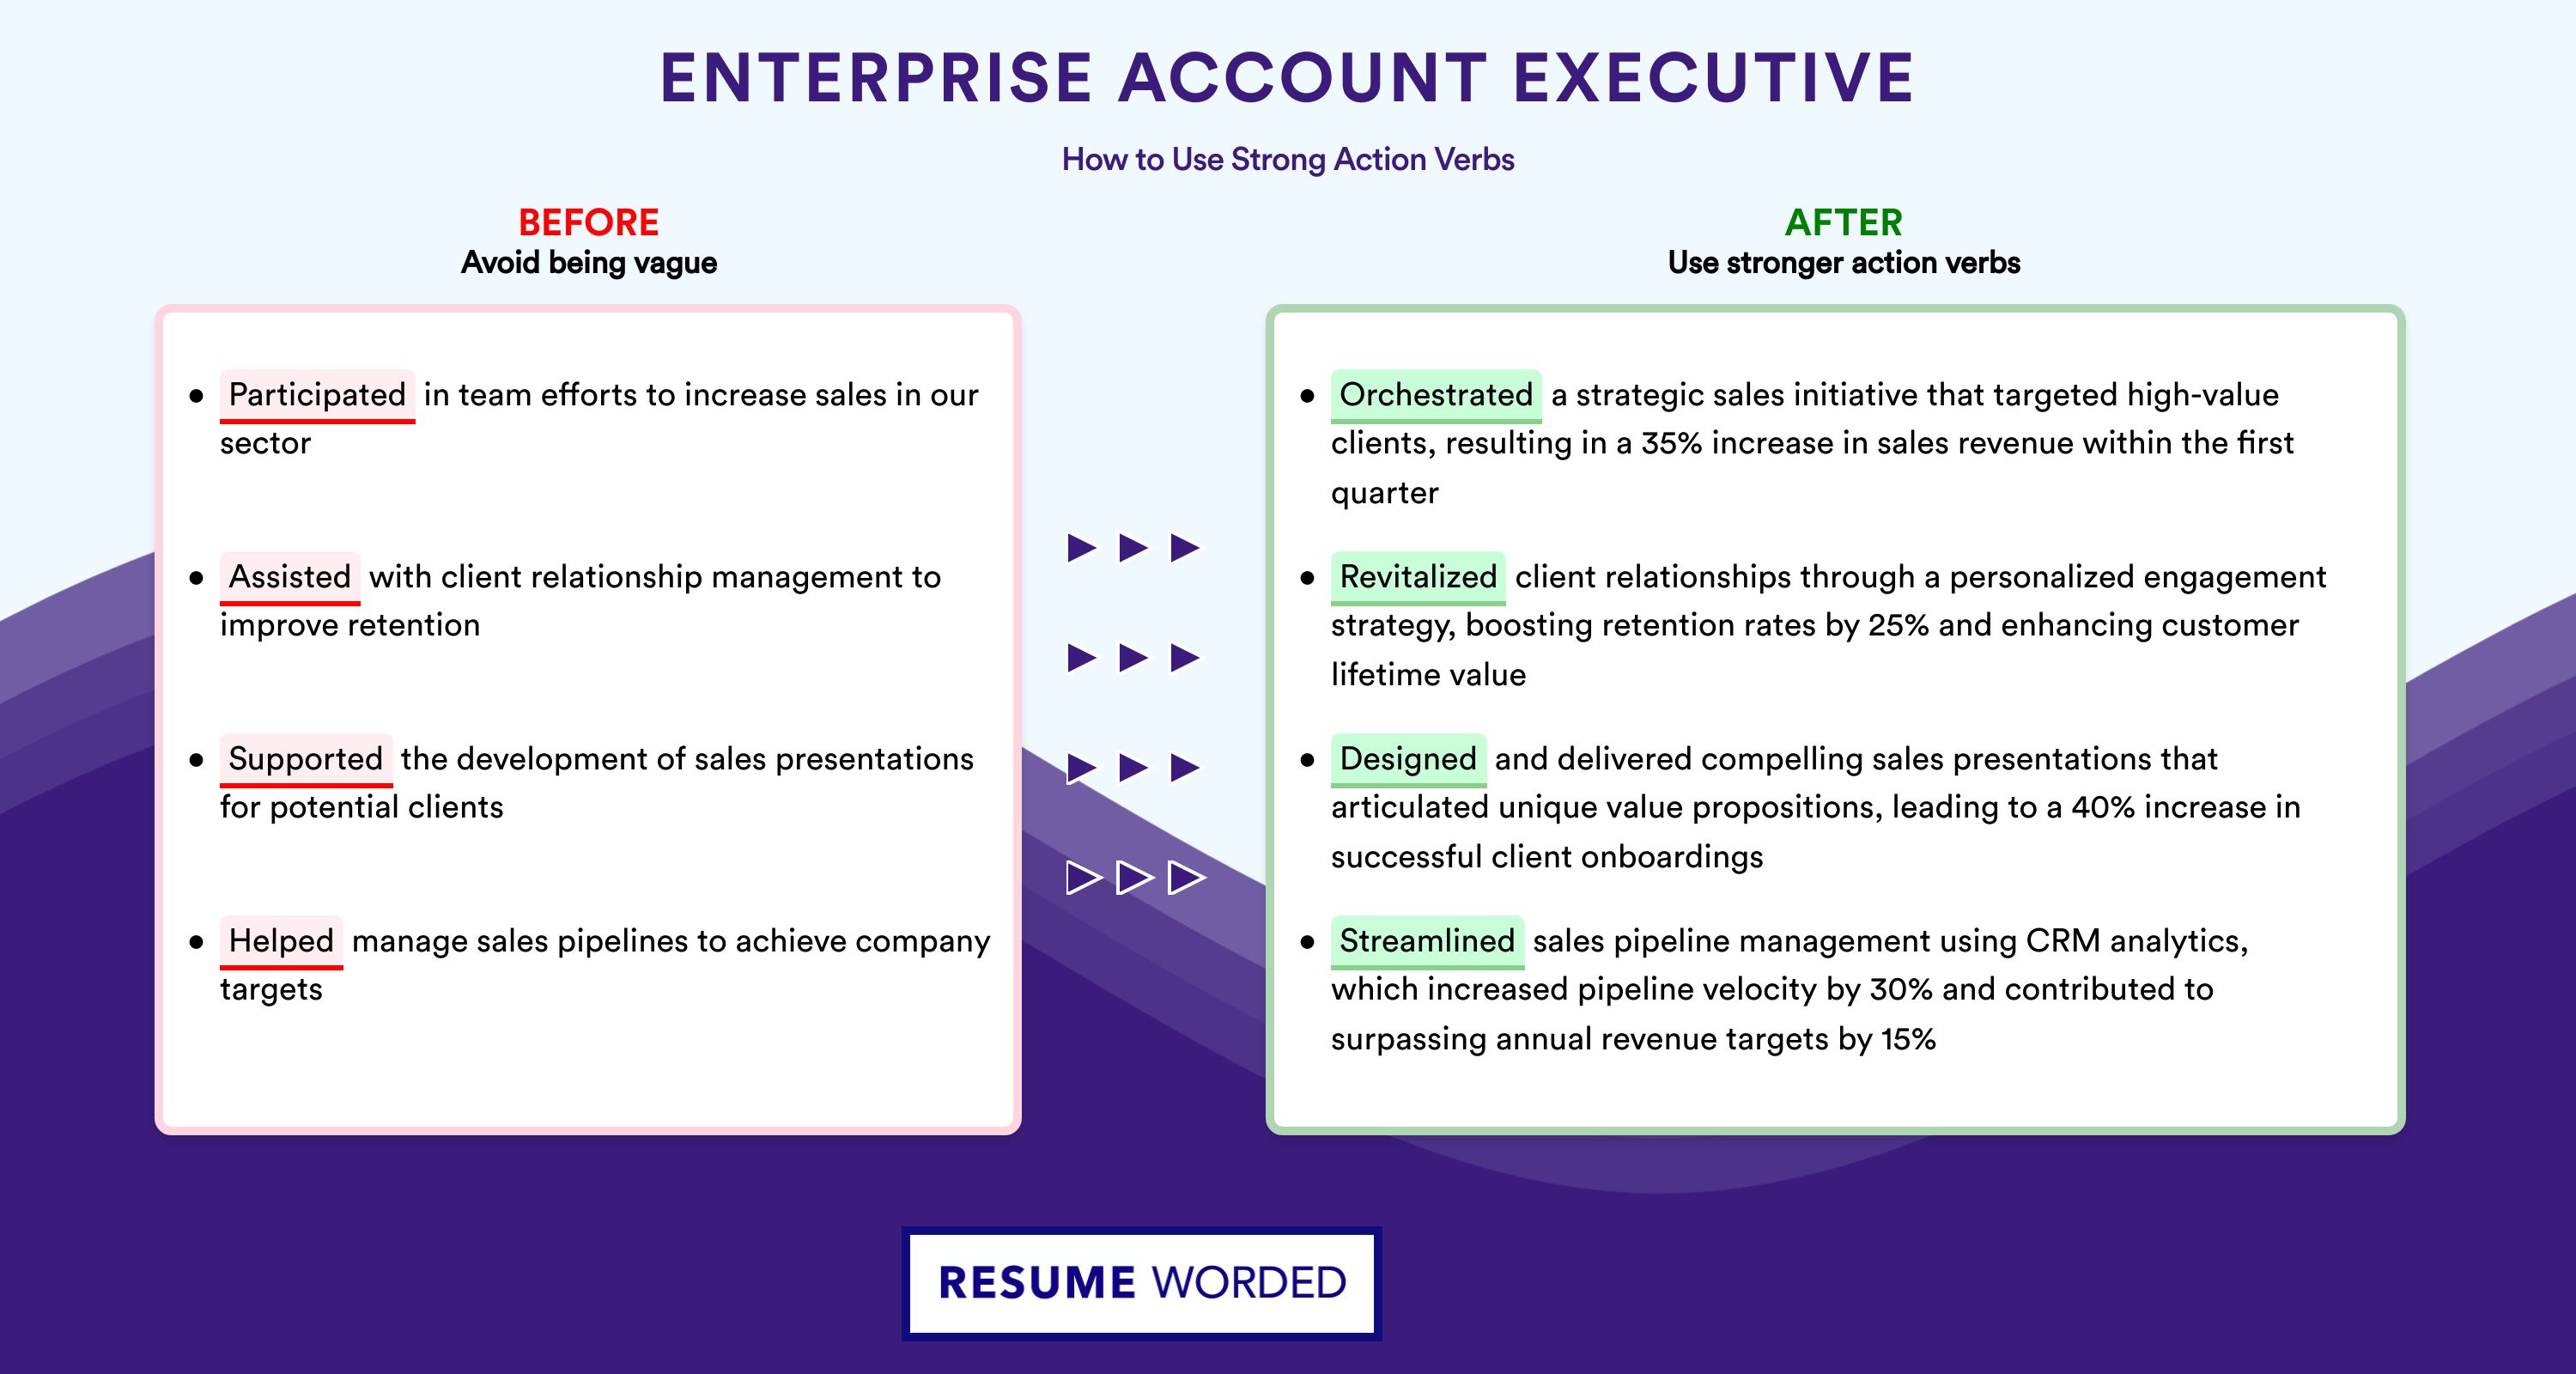 Action Verbs for Enterprise Account Executive